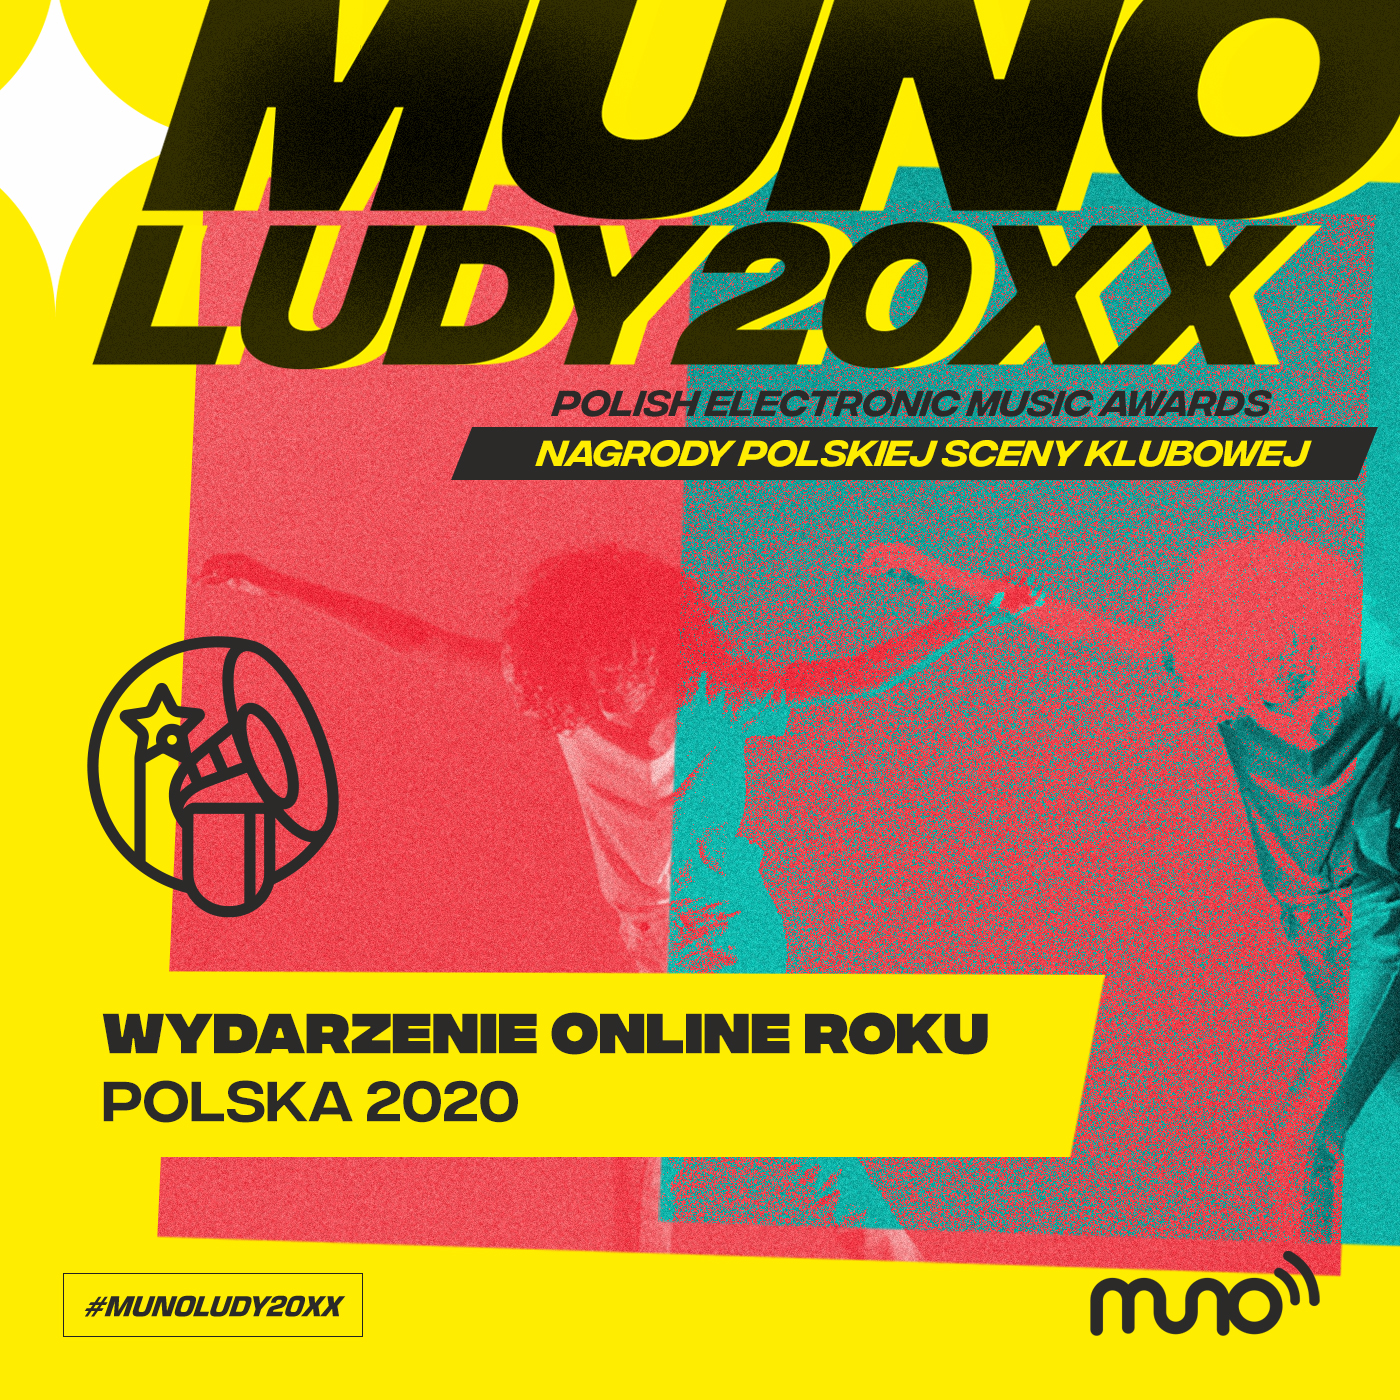 Munoludy 20XX Wydarzenie Online Roku Polska 2020